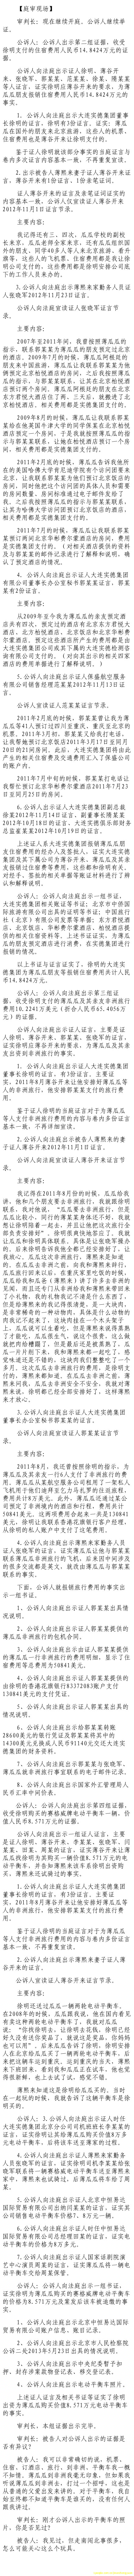 济南市中级法院官方微博公布的8月23日庭审现场记录（7）